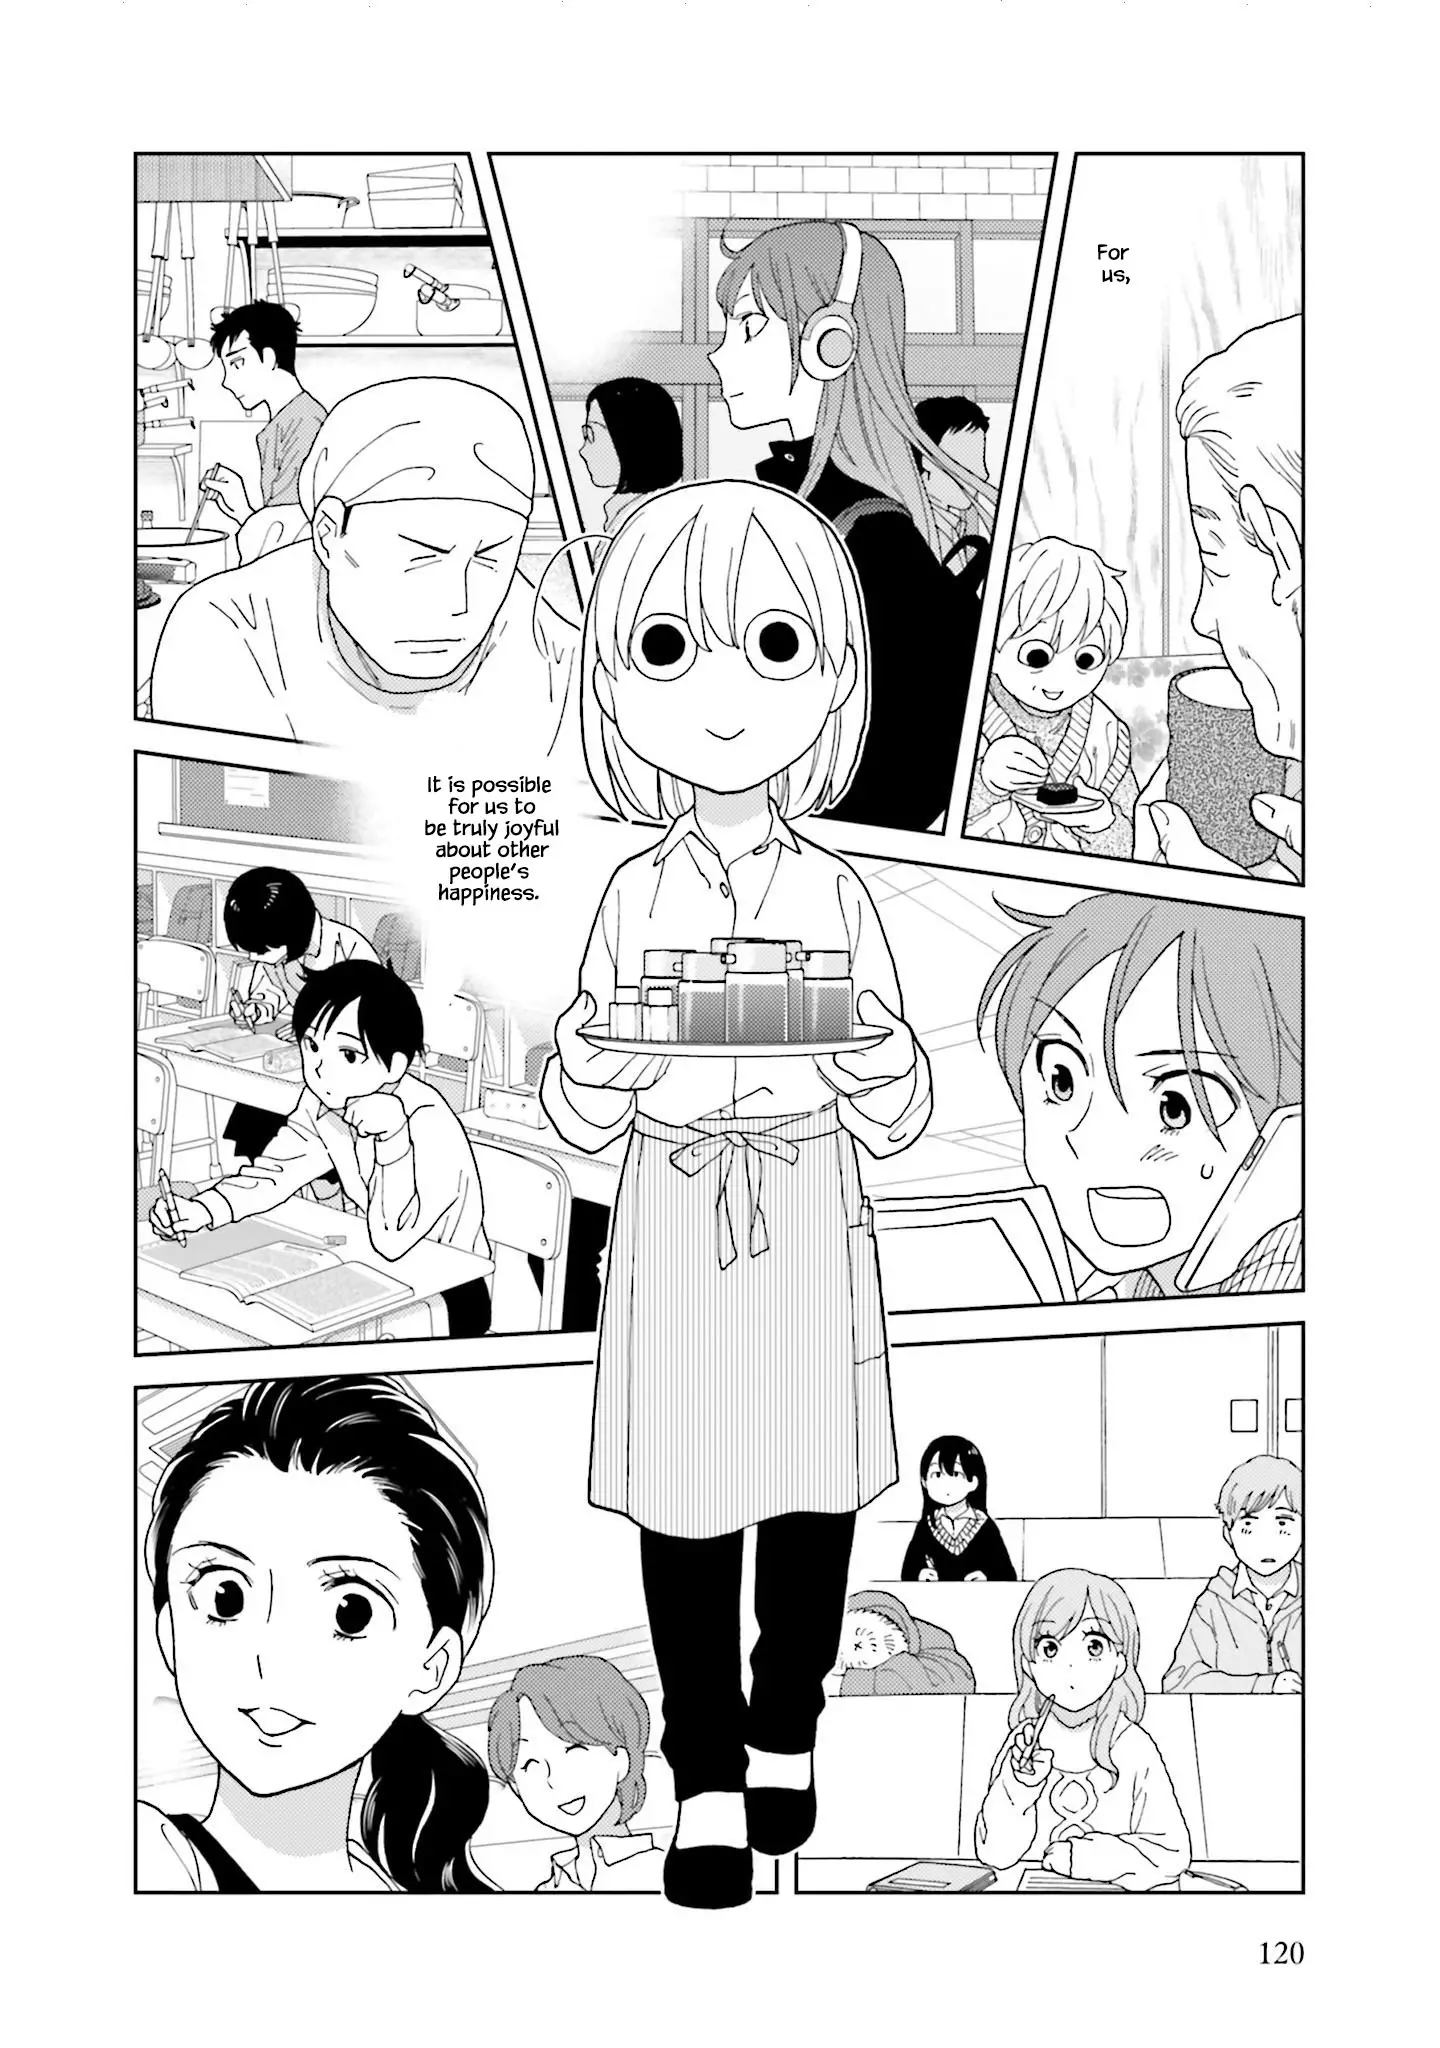 Takako-San - 75 page 8-61e2dafa